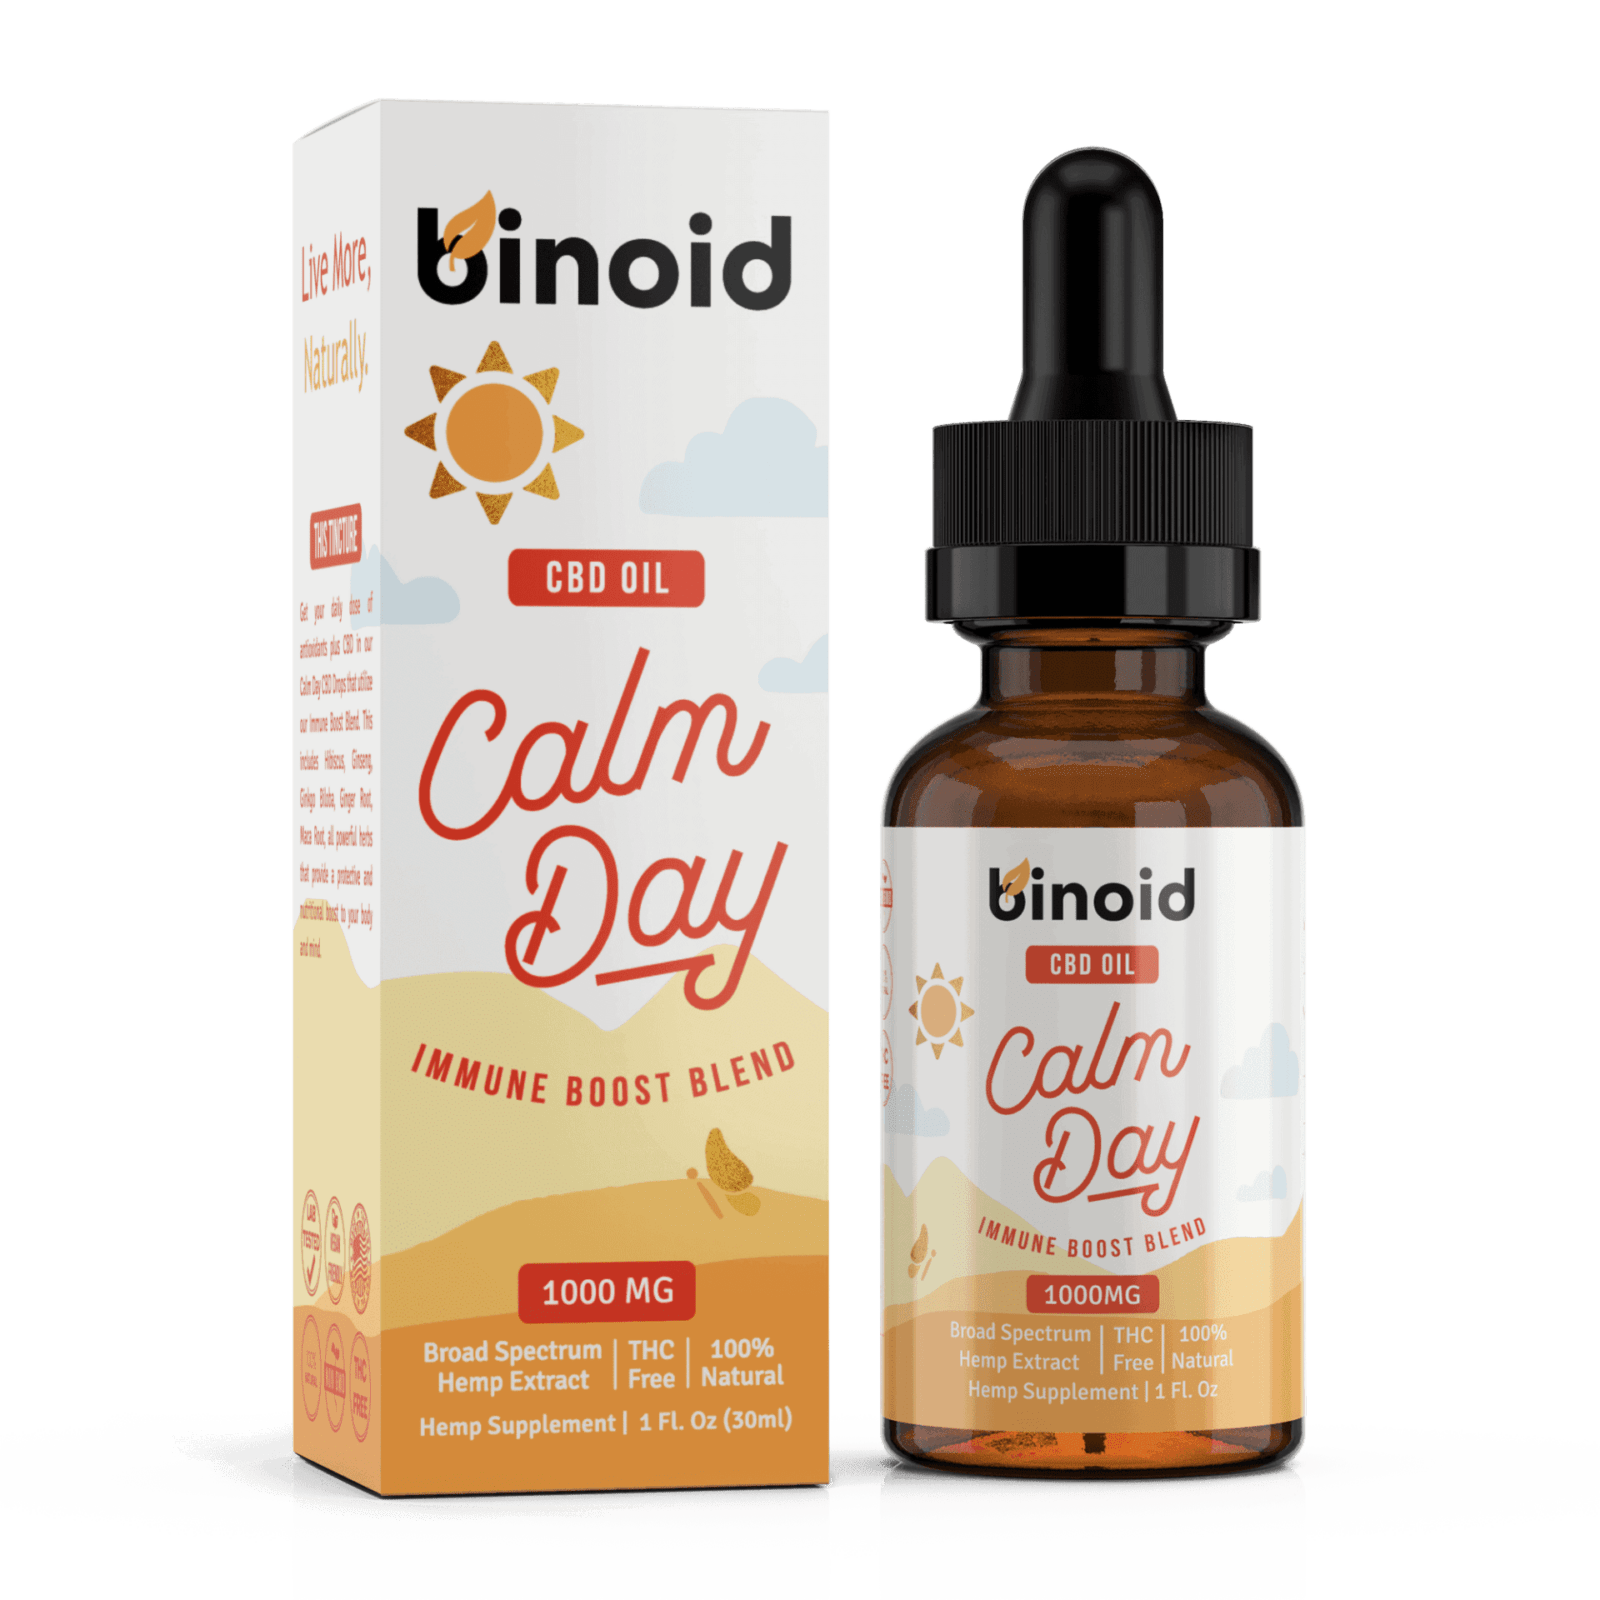 Binoid Calm Day CBD Oil - Immune Boost